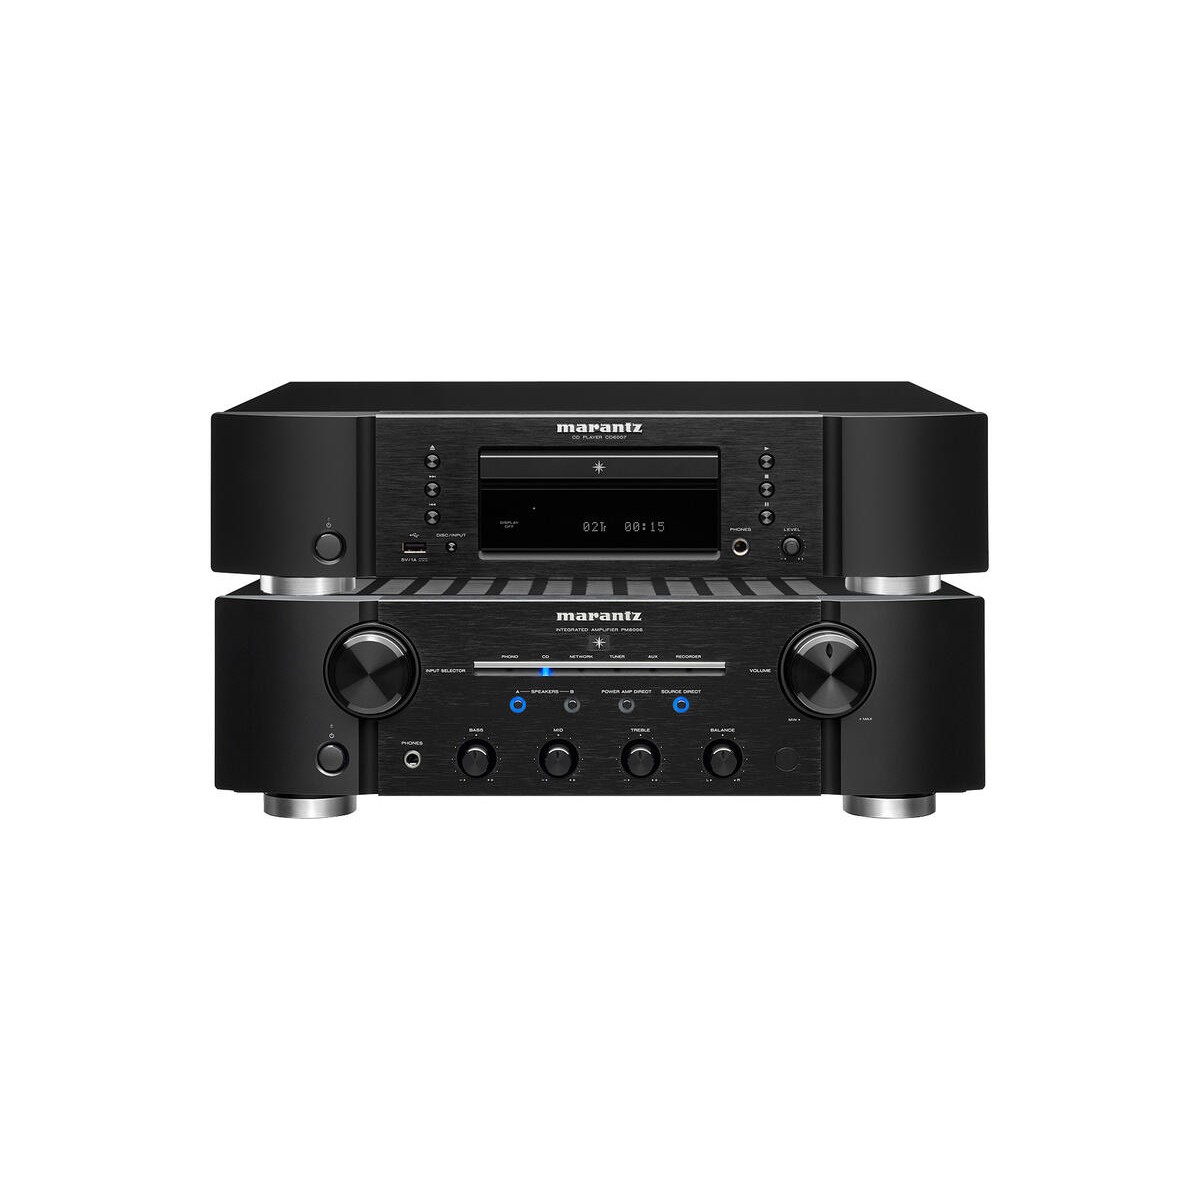 Zestaw stereo: PM8006 + CD6007